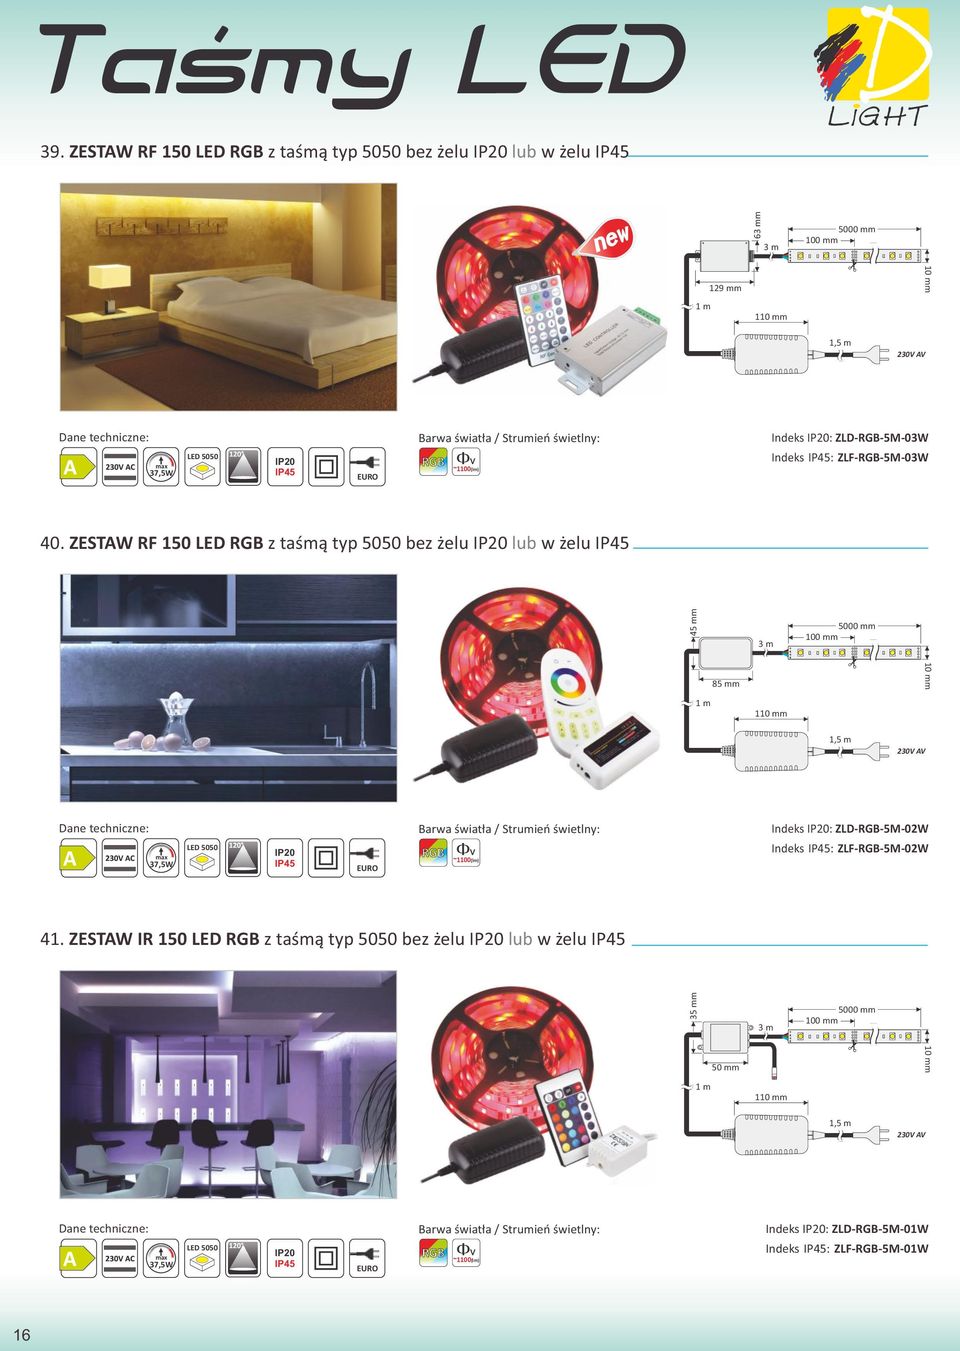 ZESTAW RF 150 LED RGB z taśmą typ 5050 bez żelu lub w żelu IP45 45 mm 3 m 5000 mm 100 mm 1 m 85 mm 110 mm 10 mm 1,5 m 230V AV 37,5W LED 5050 IP45 EURO RGB ~1100(lm)